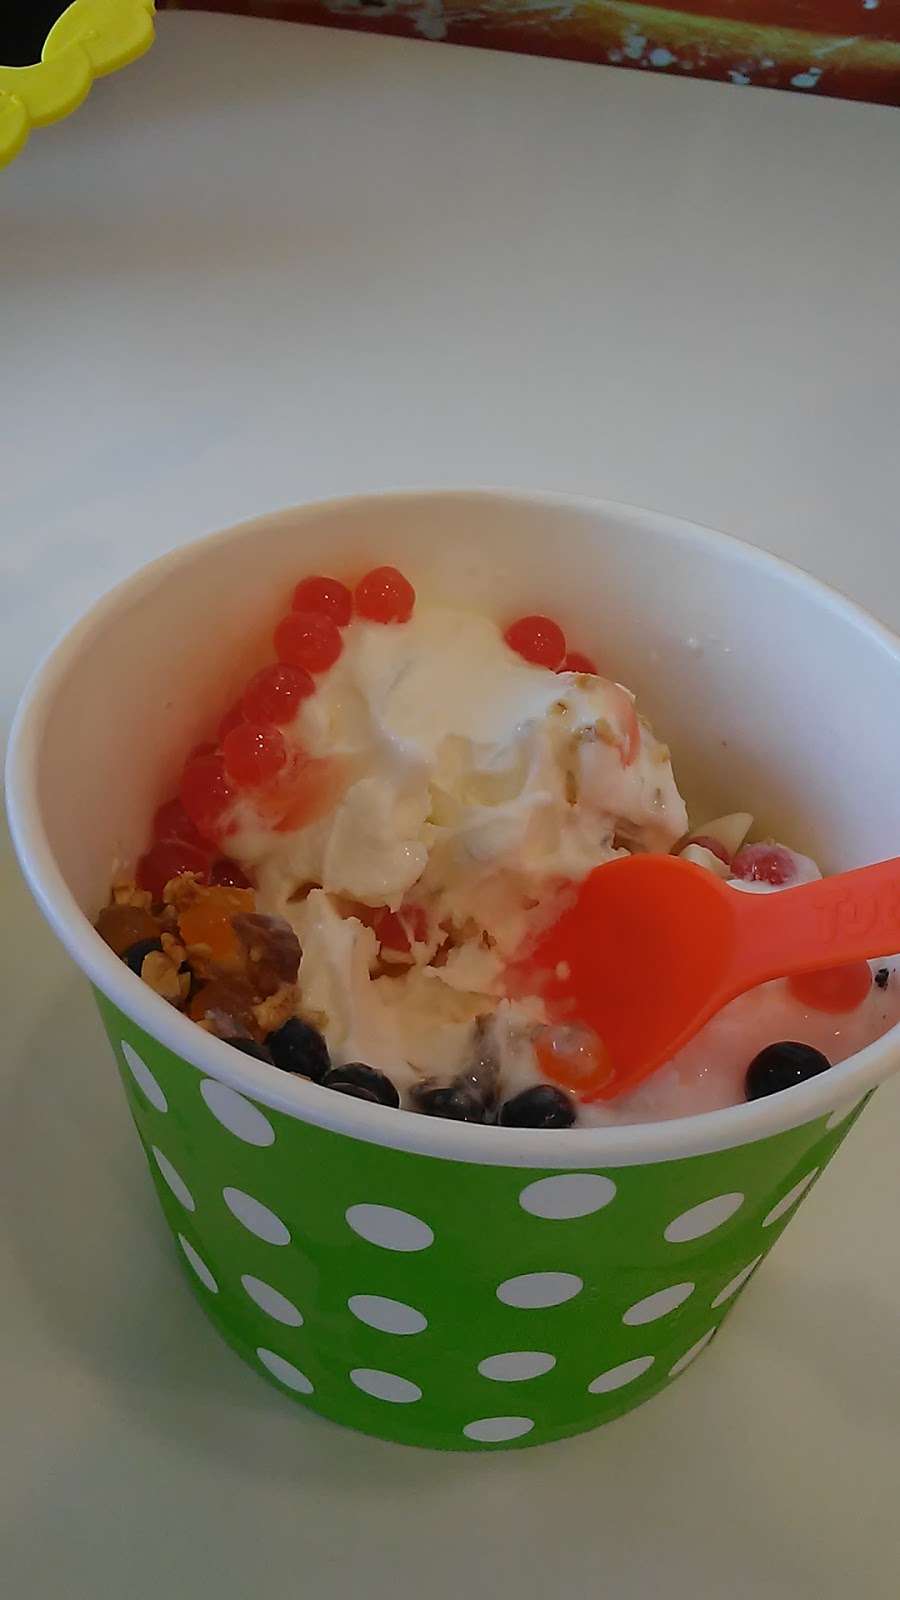 Tutti Frutti Frozen Yogurt | 1200 W Warner Ave, Santa Ana, CA 92707 | Phone: (714) 850-1200